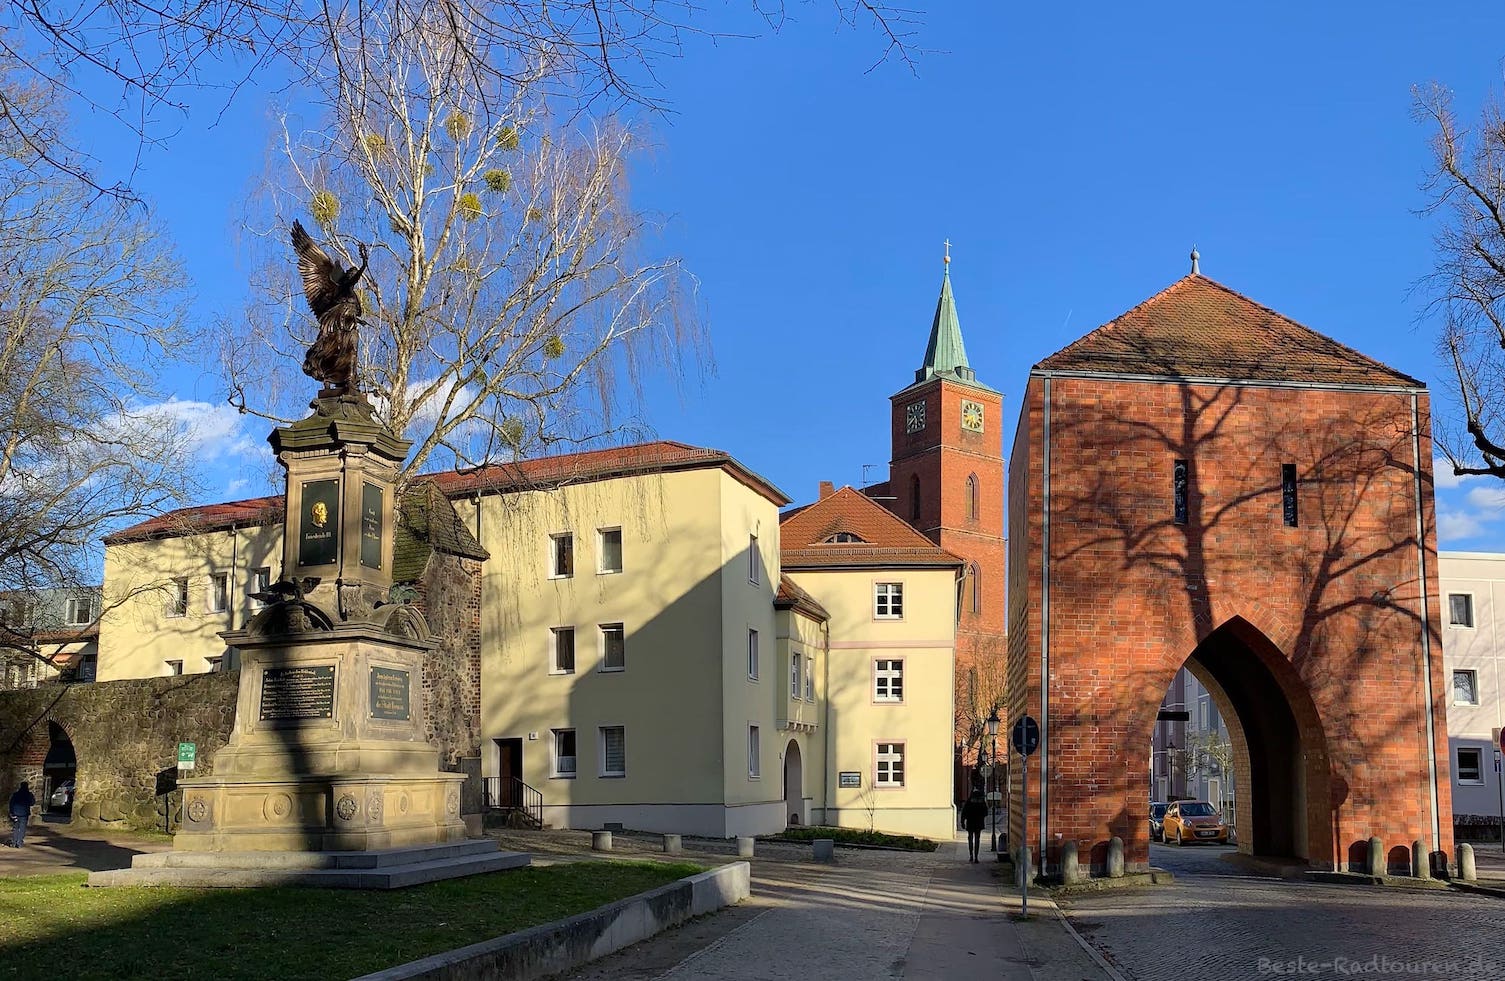 Foto von der Mühlenstraße Bernau aus: Mühlentor, Marienkirche, Kriegerdenkmal, Stadtmauer